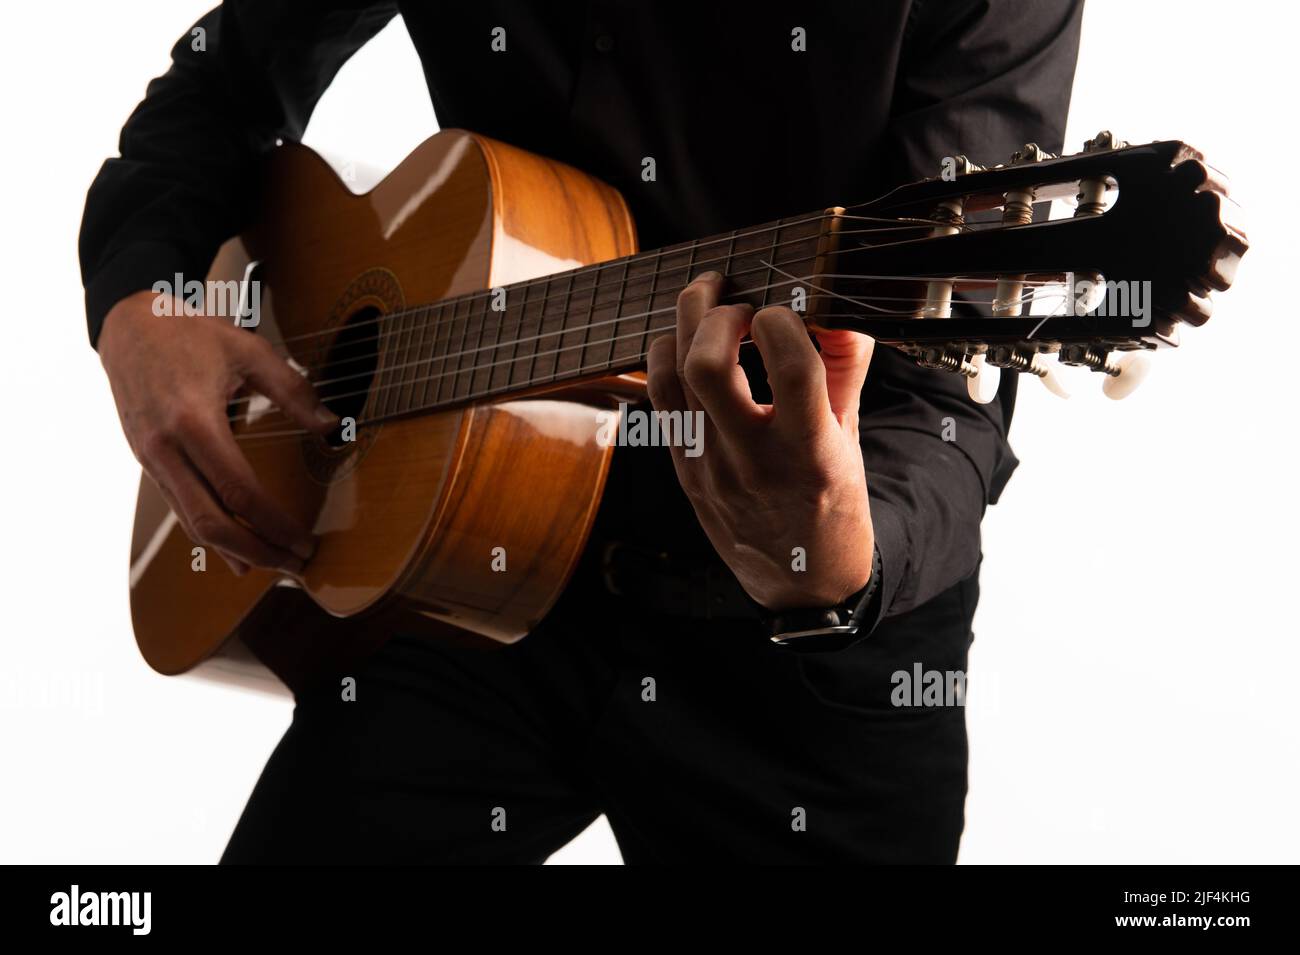 La chitarra classica isolata e il chitarrista si avvicinano a una messa a punto ravvicinata su sfondo bianco. Foto Stock